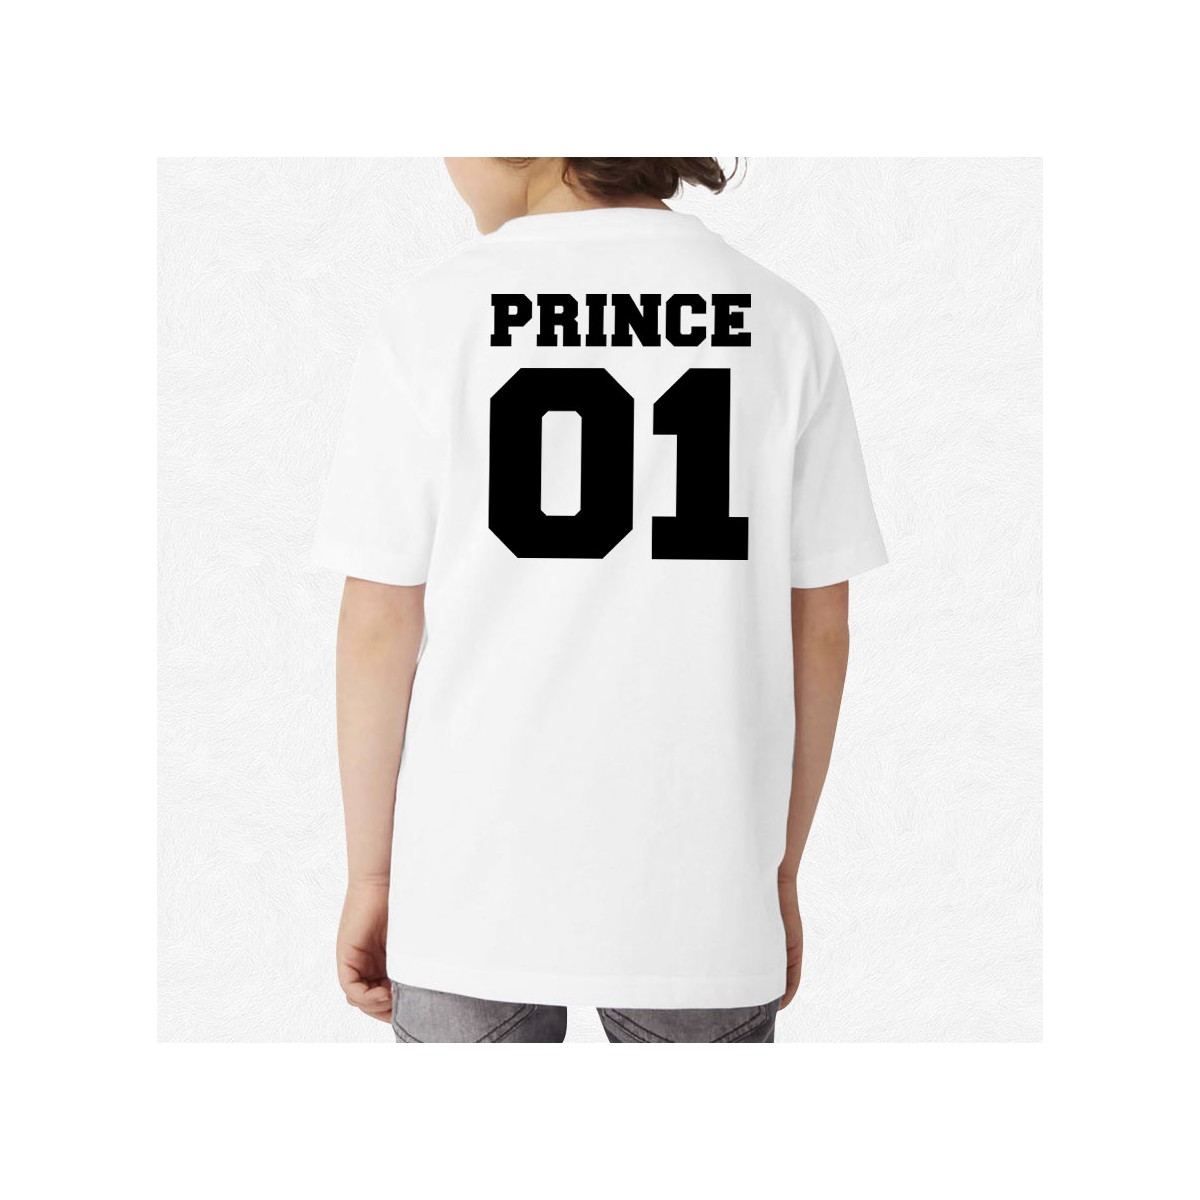 T-shirt Prince 01